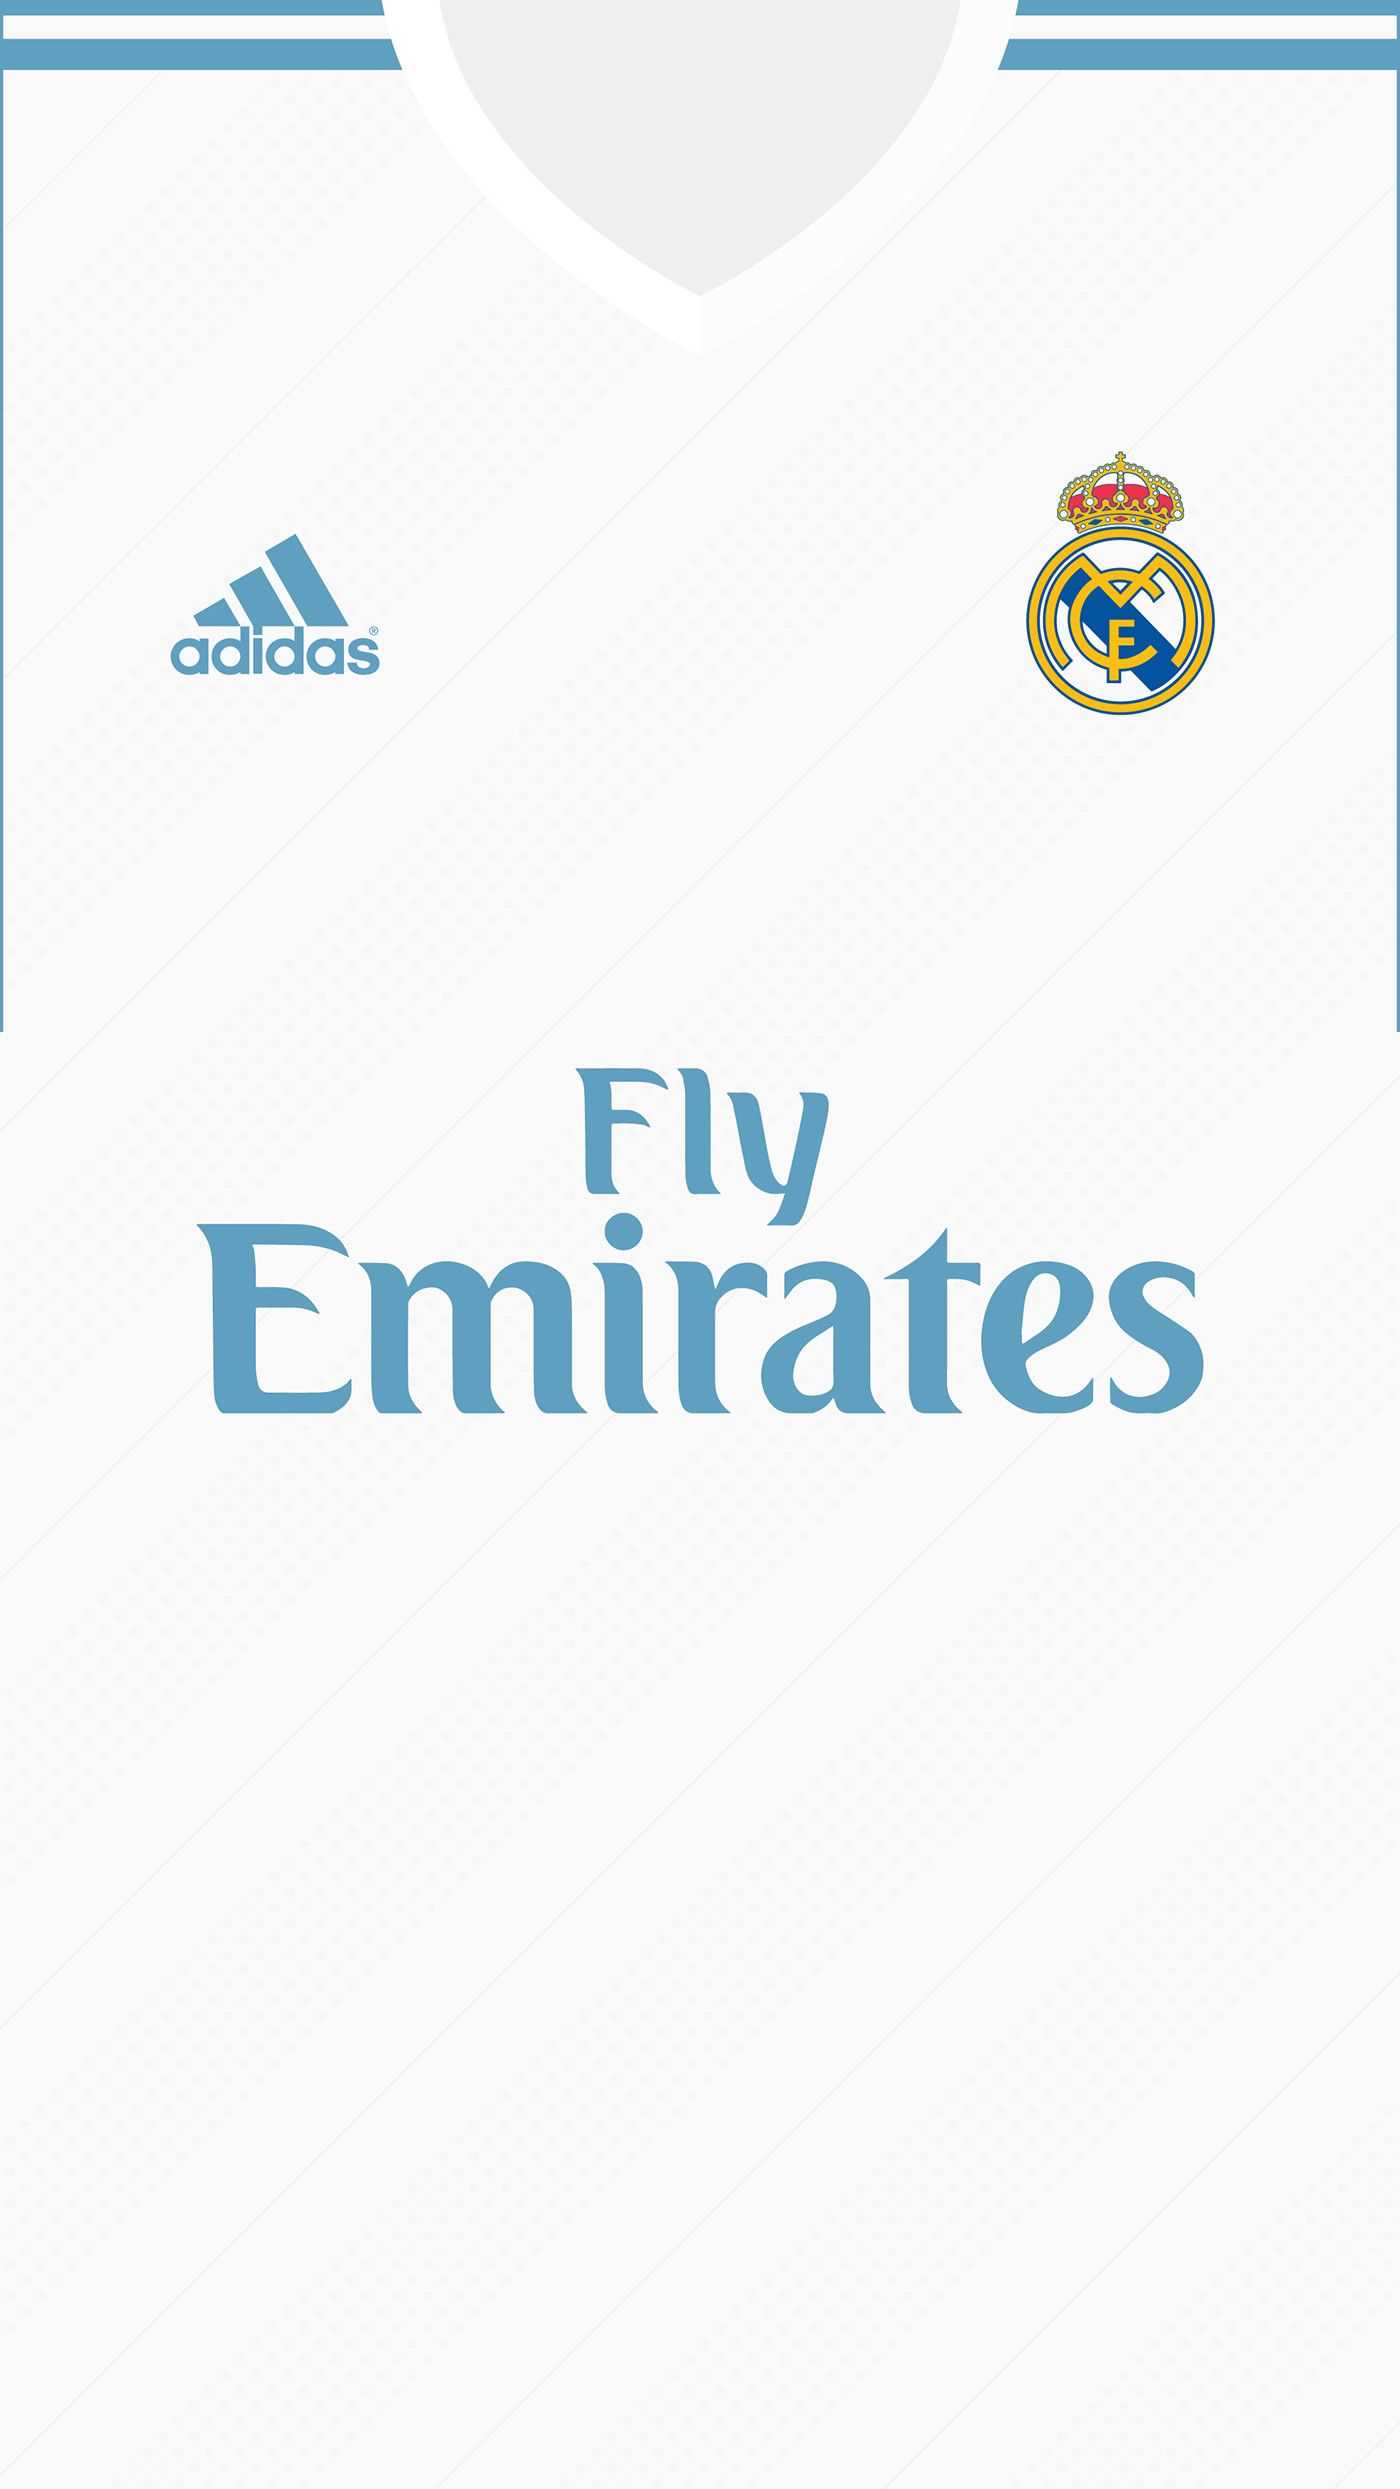 Real Madrid Kit 2017 / 18 Wallpaper for mobile on Behance